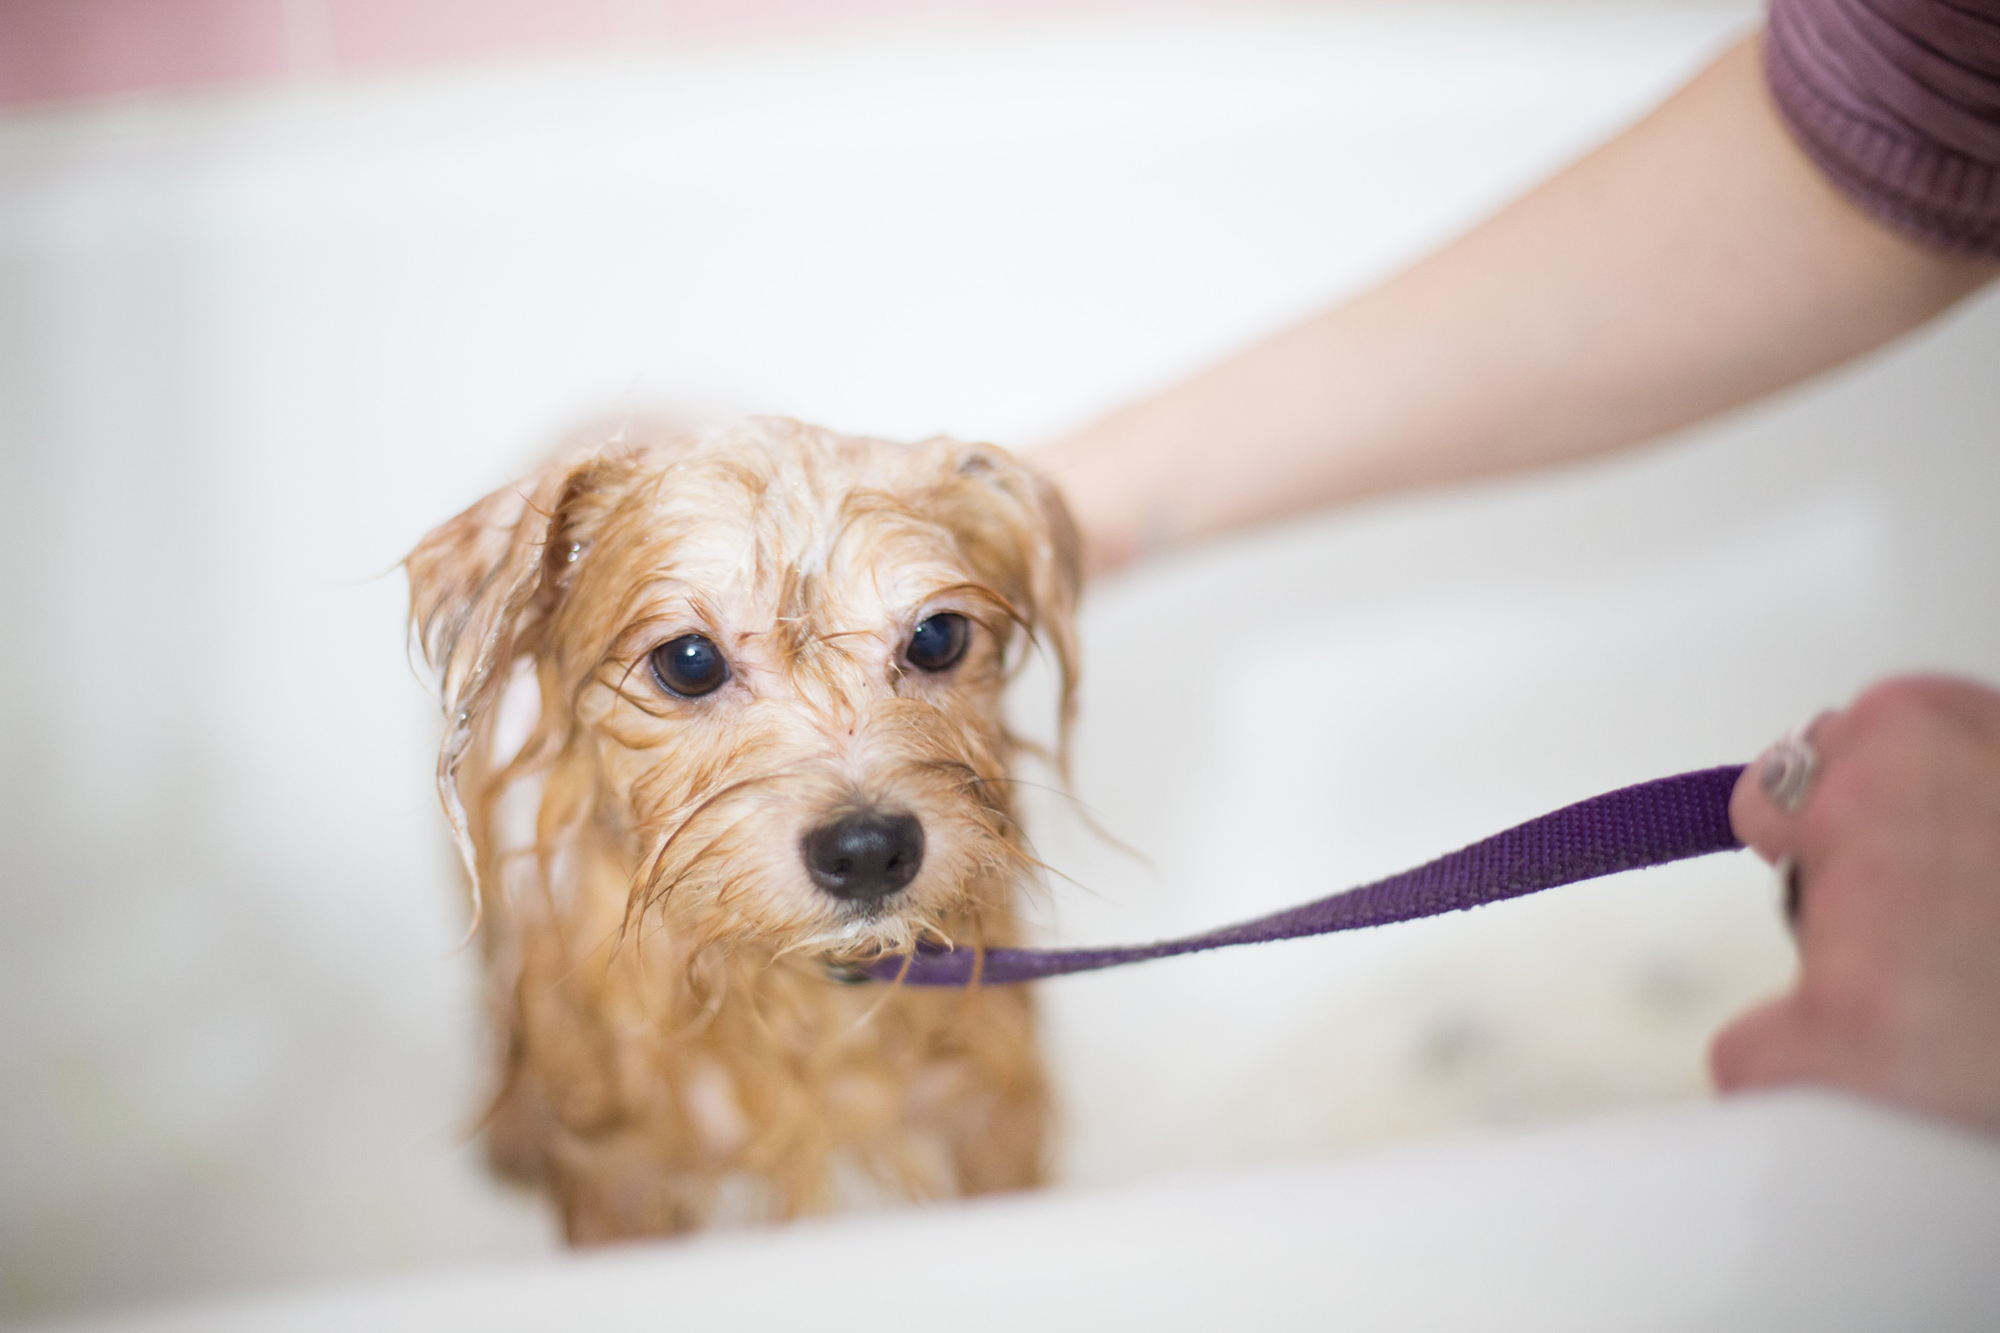 Allergia kutyáknál - Speciális samponnal történő fürdetés enyhítheti a bőrtüneteket